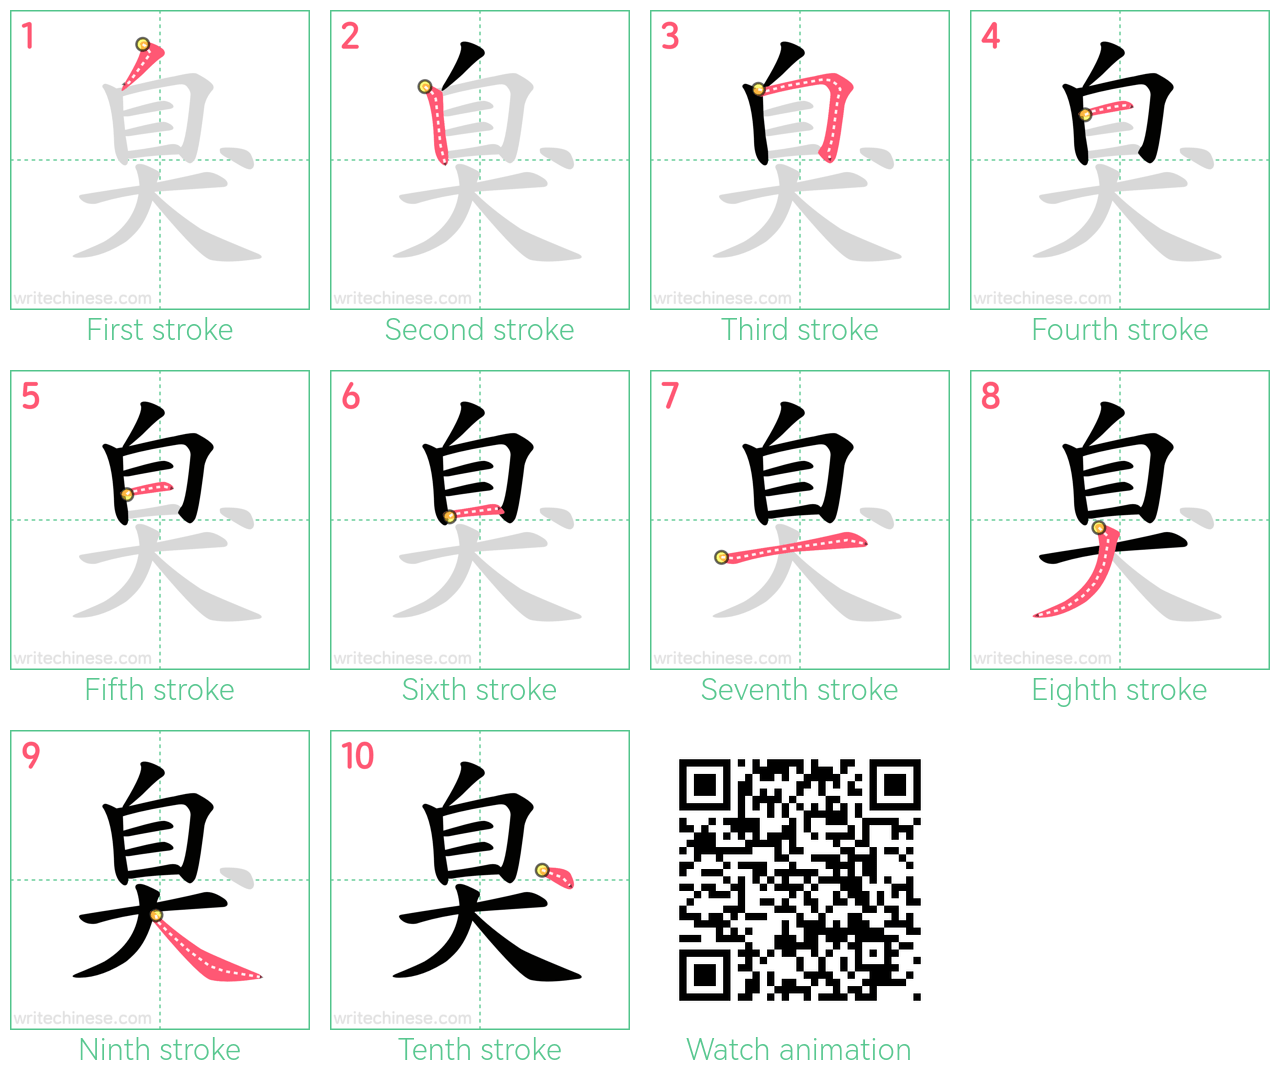 臭 step-by-step stroke order diagrams